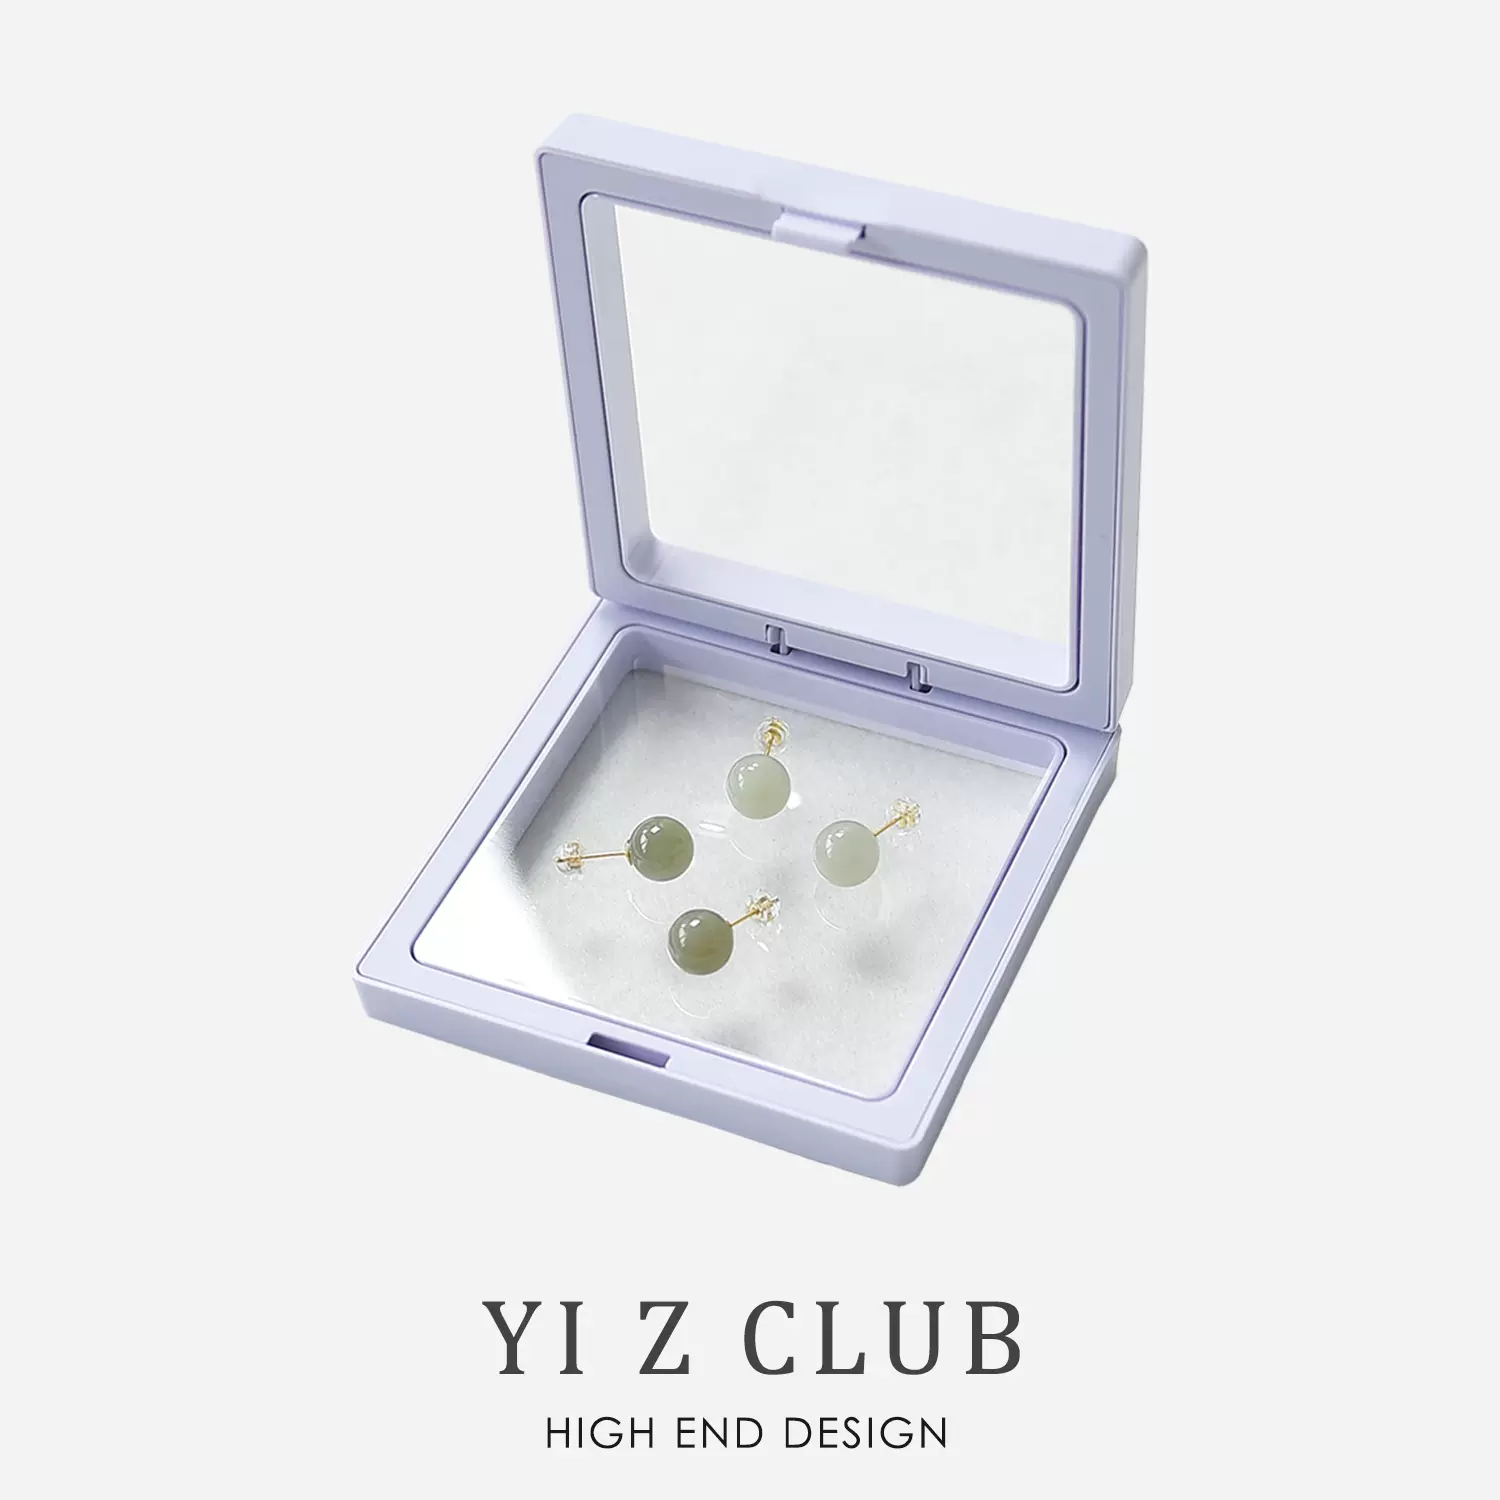 Yi Z CLUB 复古现代优雅925银针高亮仿珍珠耳钉耳环耳坠饰品0.05-Taobao 